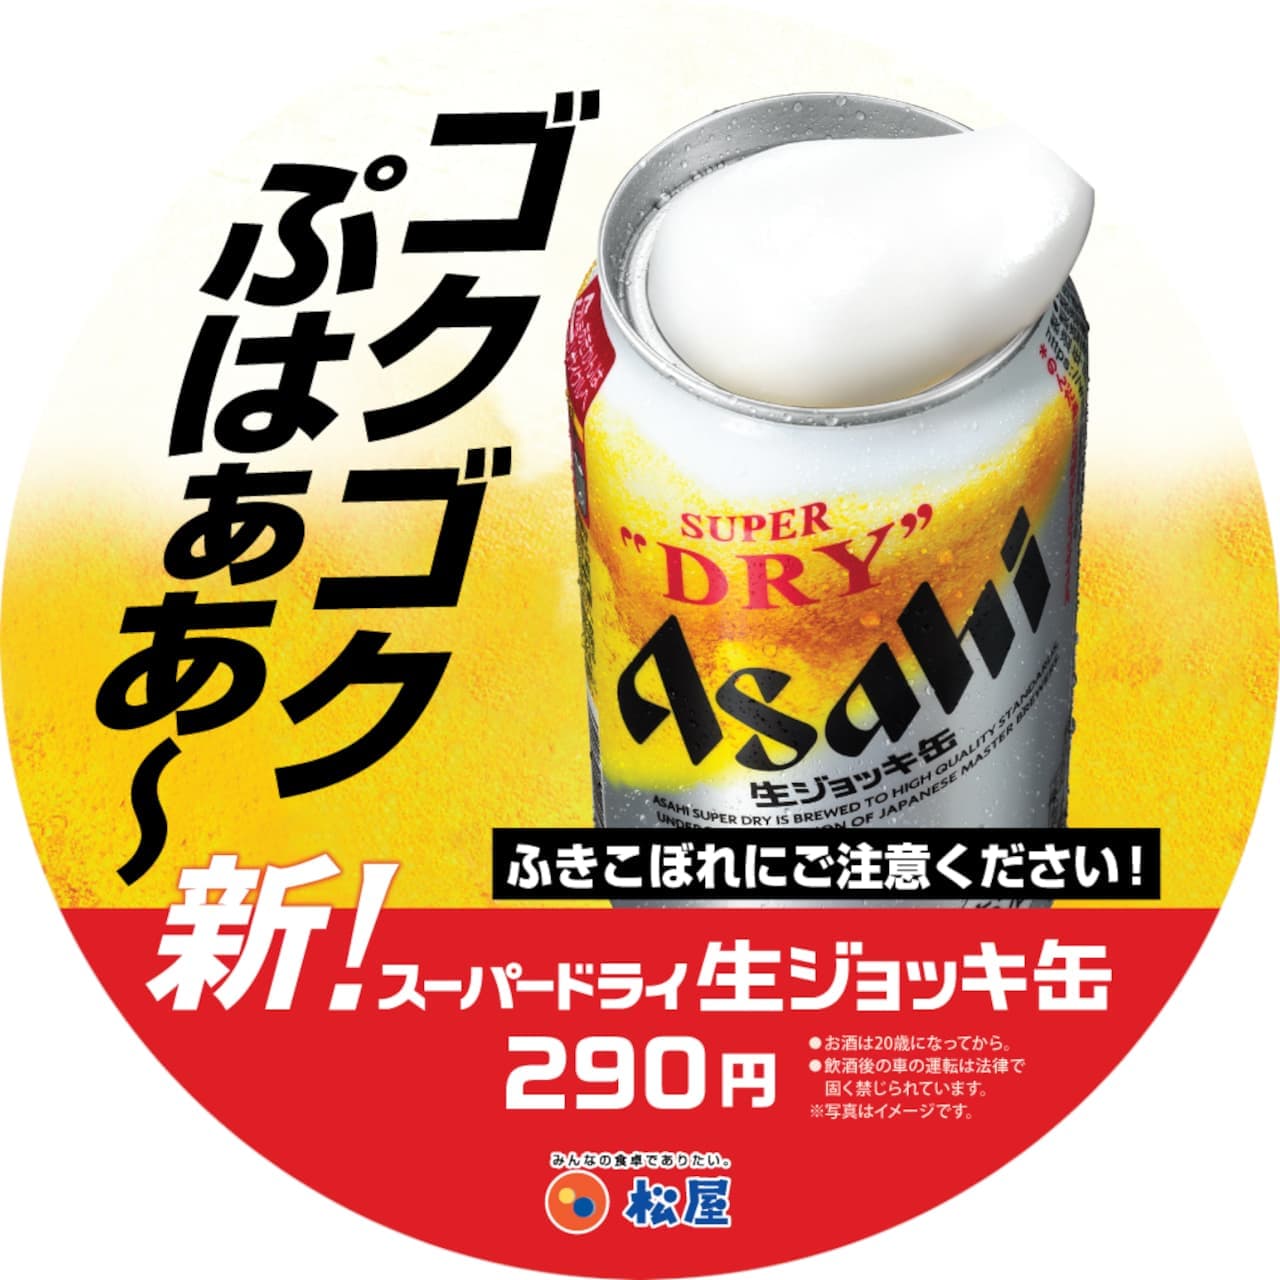 松屋「アサヒ スーパードライ生ジョッキ缶」